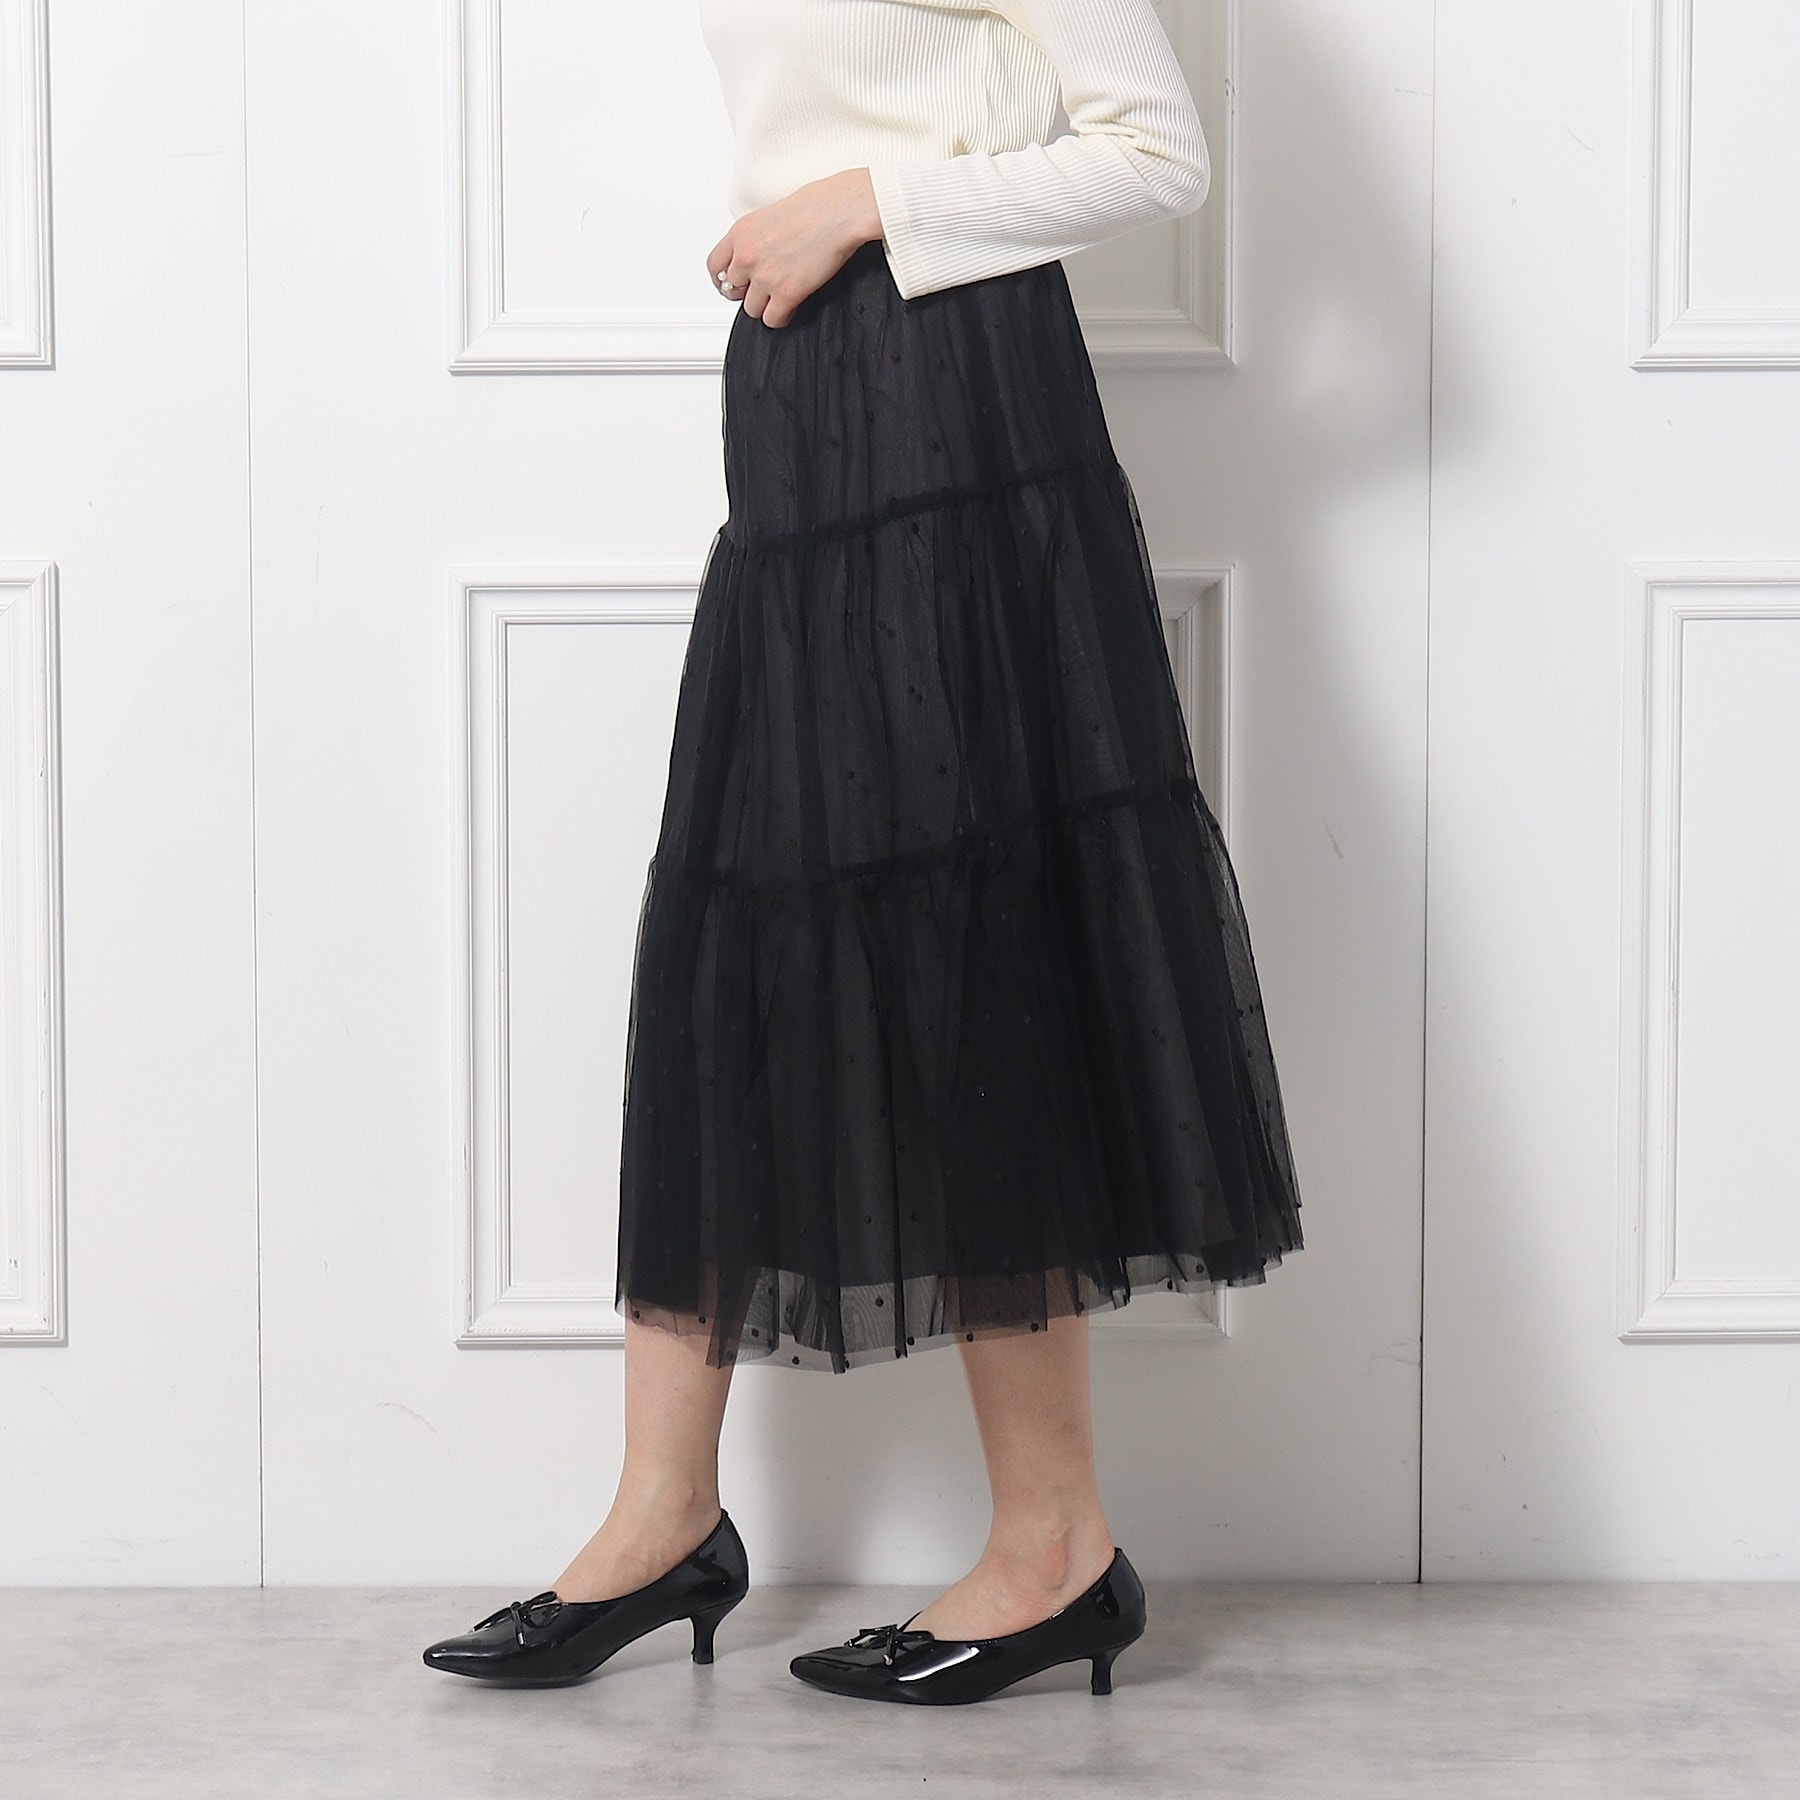 クチュールブローチ(Couture Brooch)のドットエンブロティアードスカート15